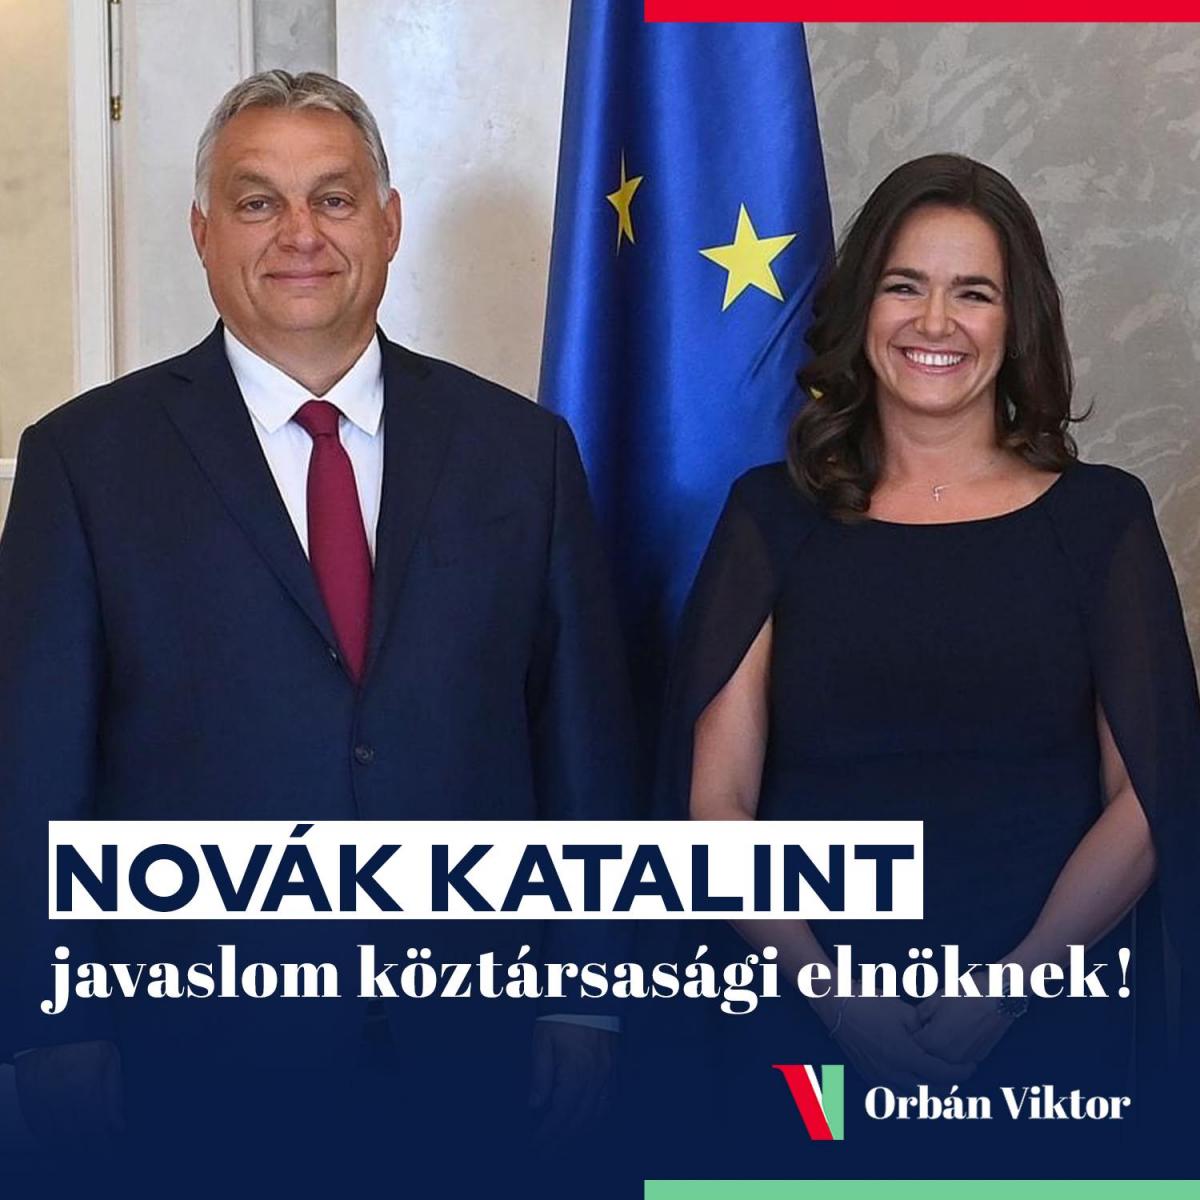 Novák Katalin személyében először lehet női köztársasági elnöke Magyarországnak